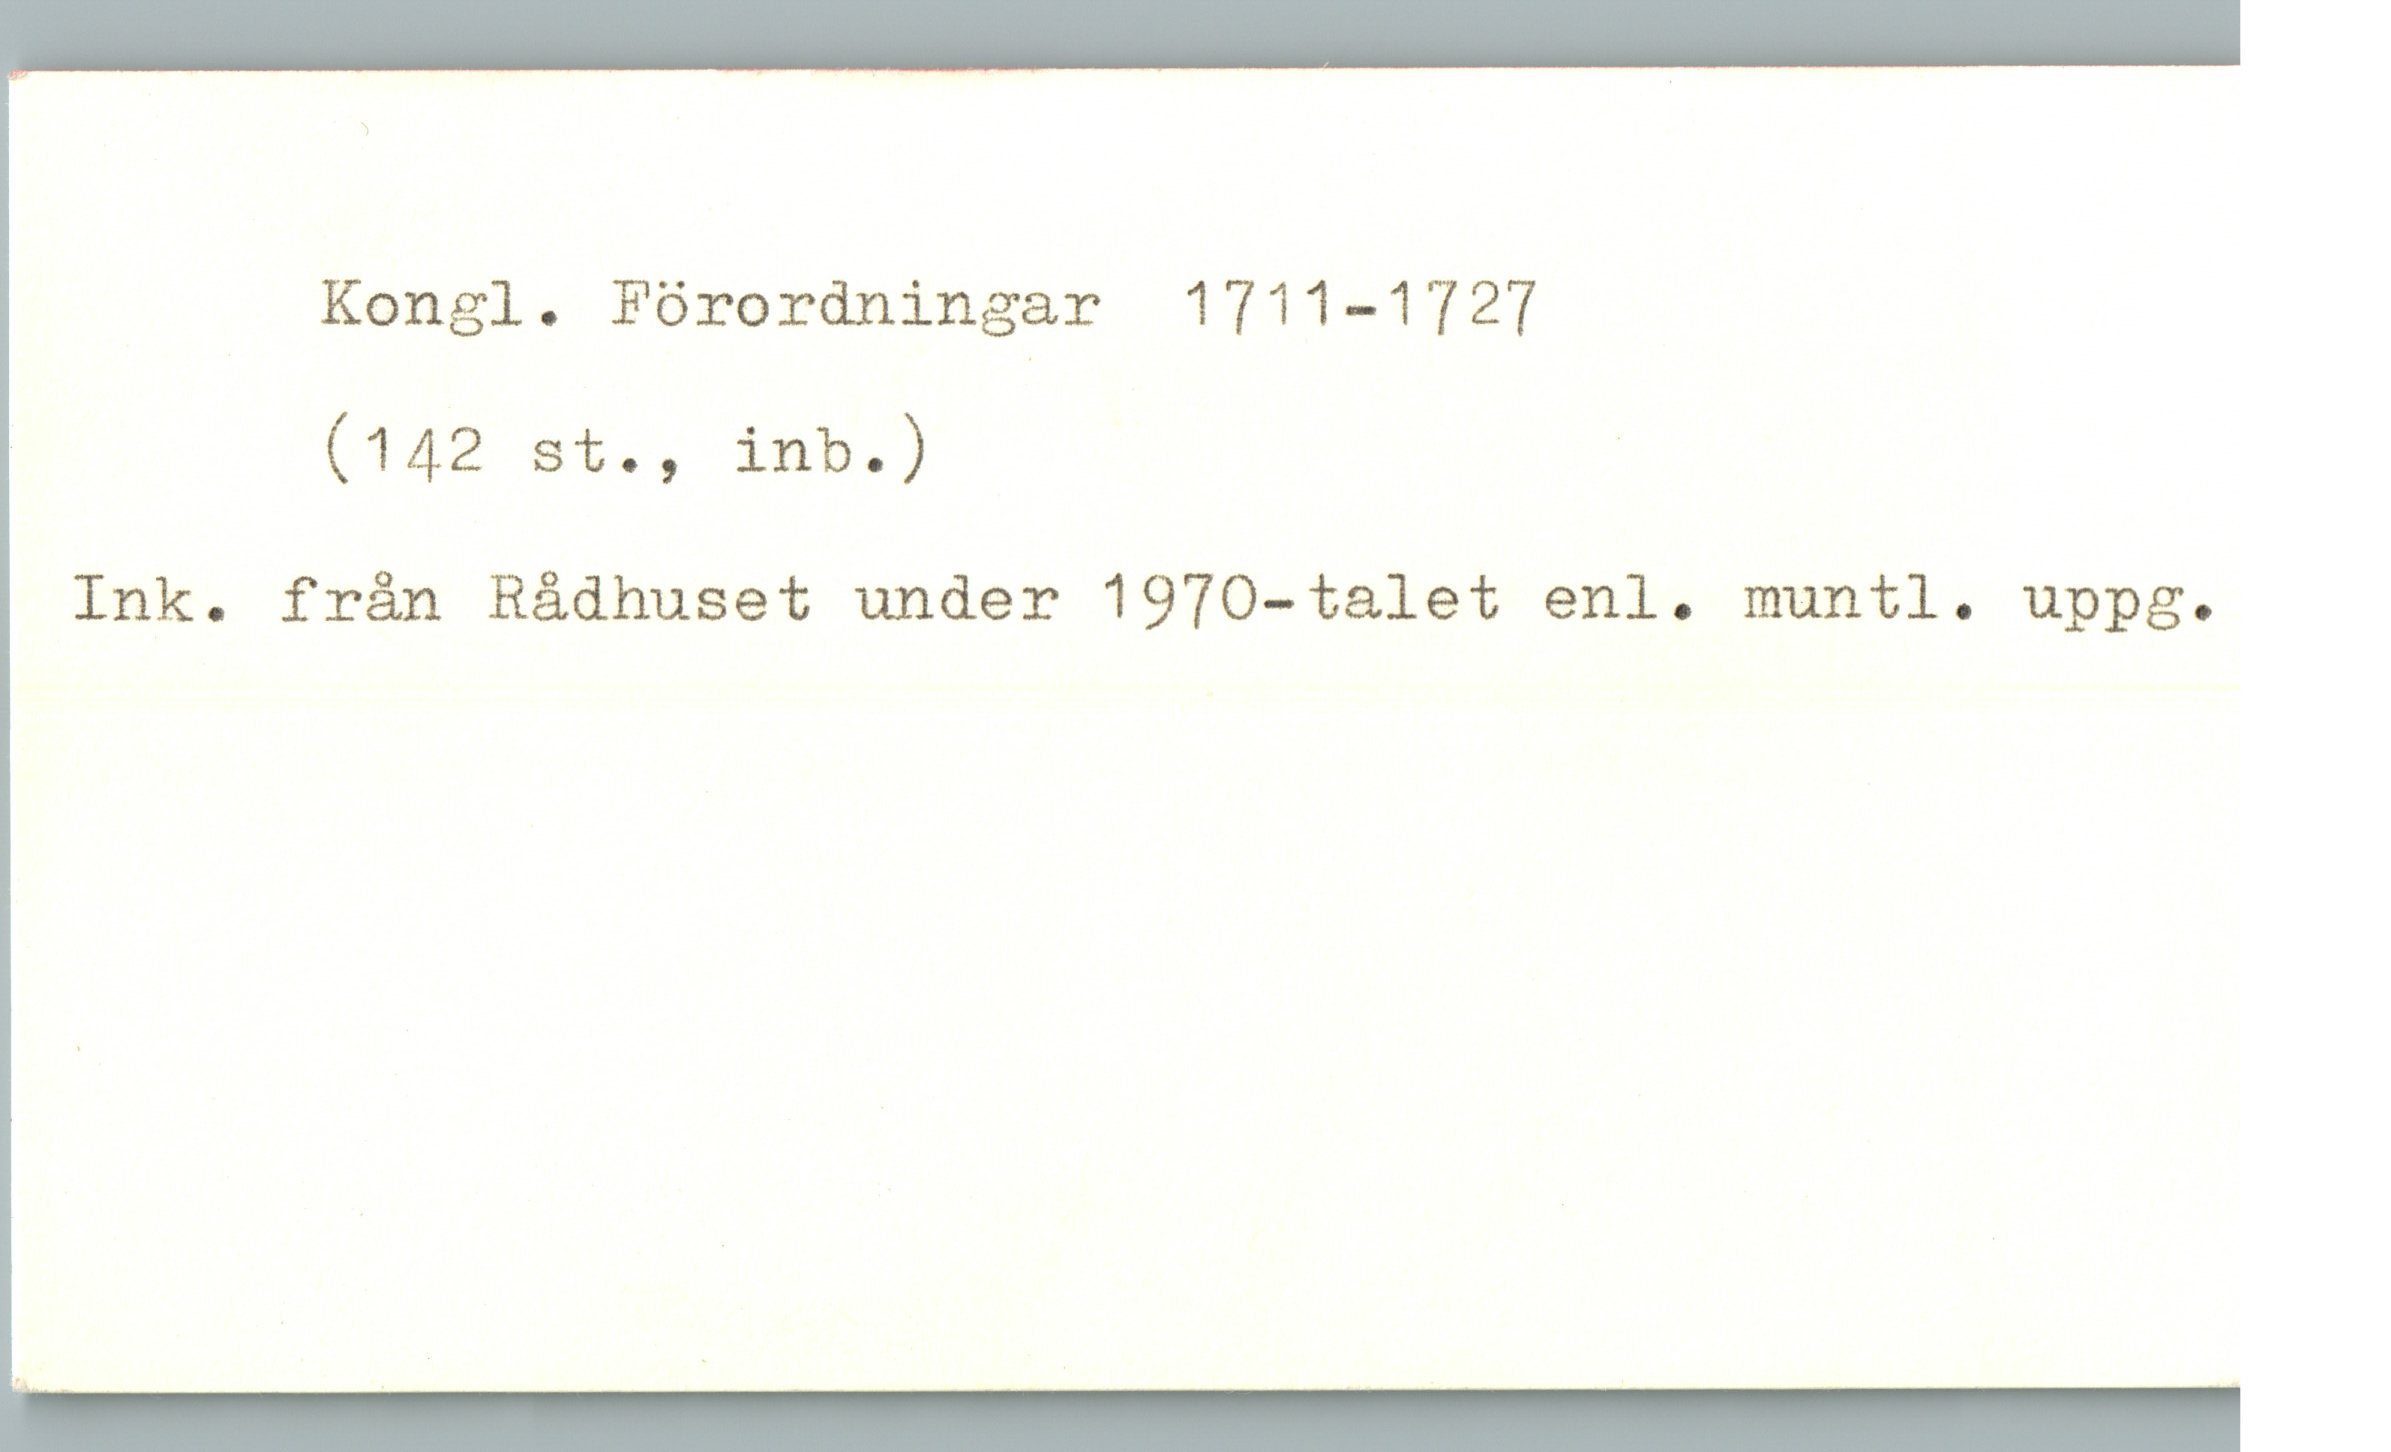  Kongl. Förordningar 1711—1727
(142 st., inb.) -
Ink. från Rådhuset under 1970—talet enl. muntl. uppg.

